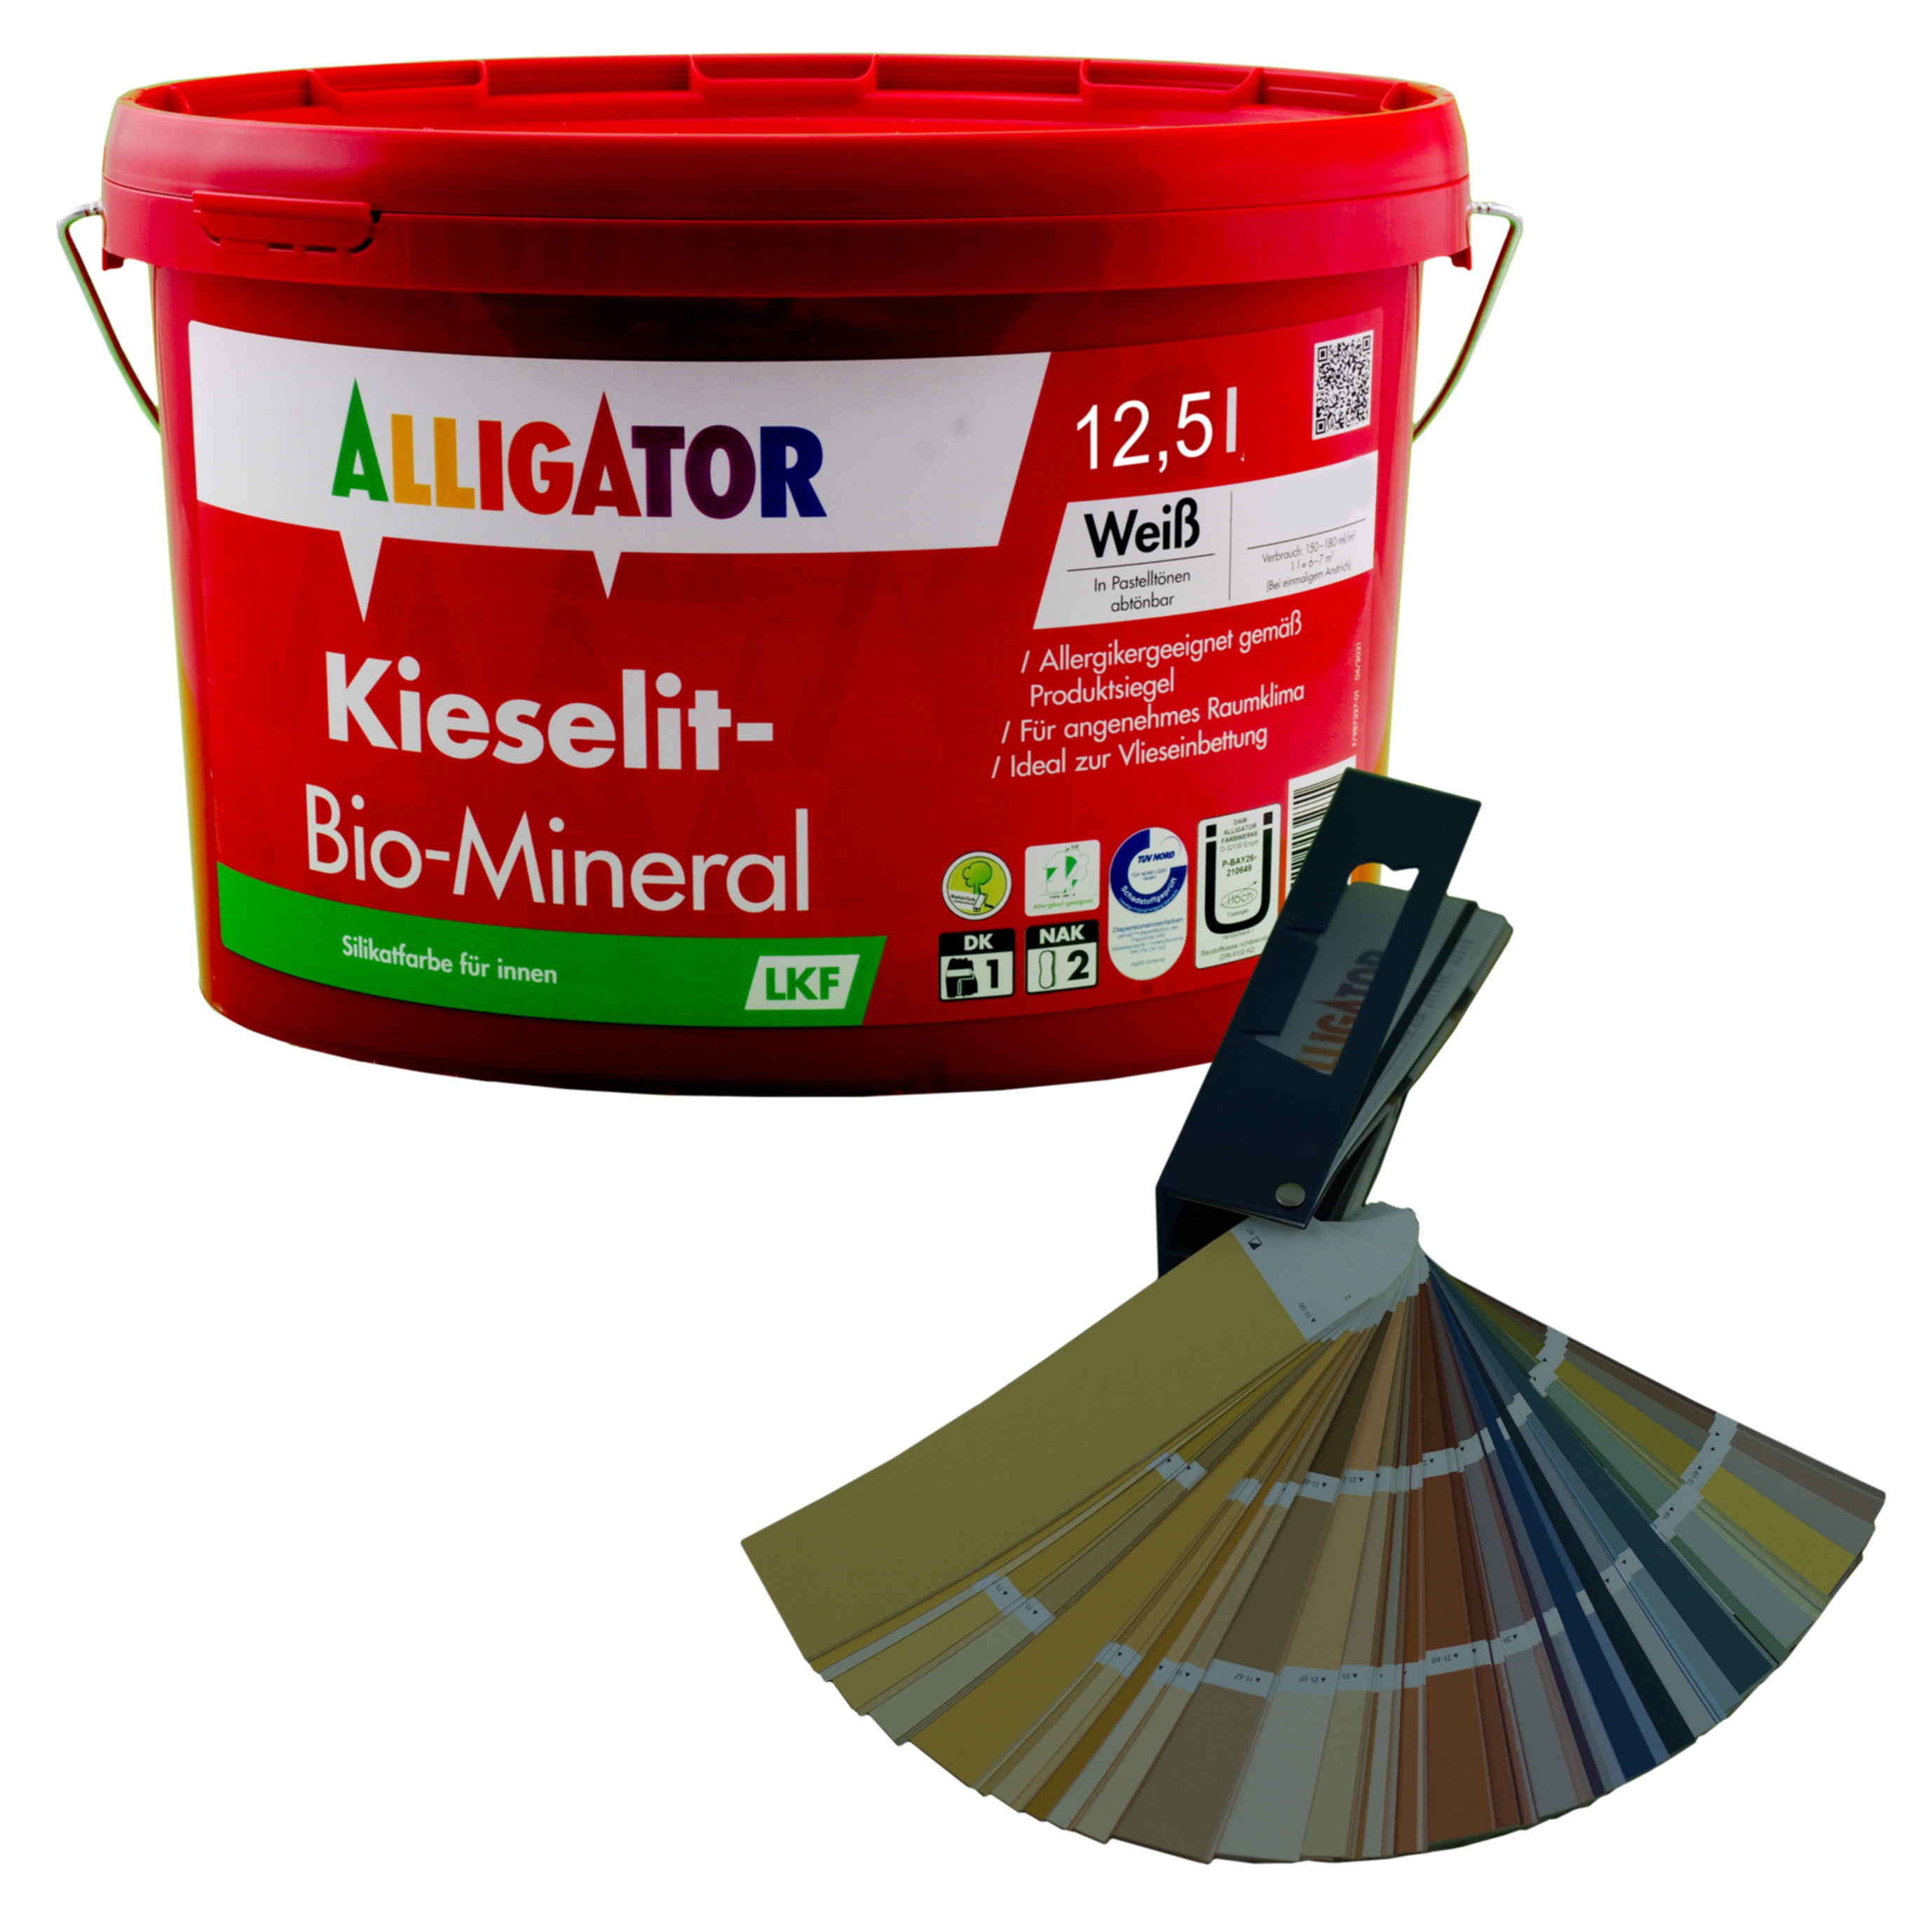 Alligator Kieselit-Bio-Mineral LKF 12,5 ltr. mix PG5